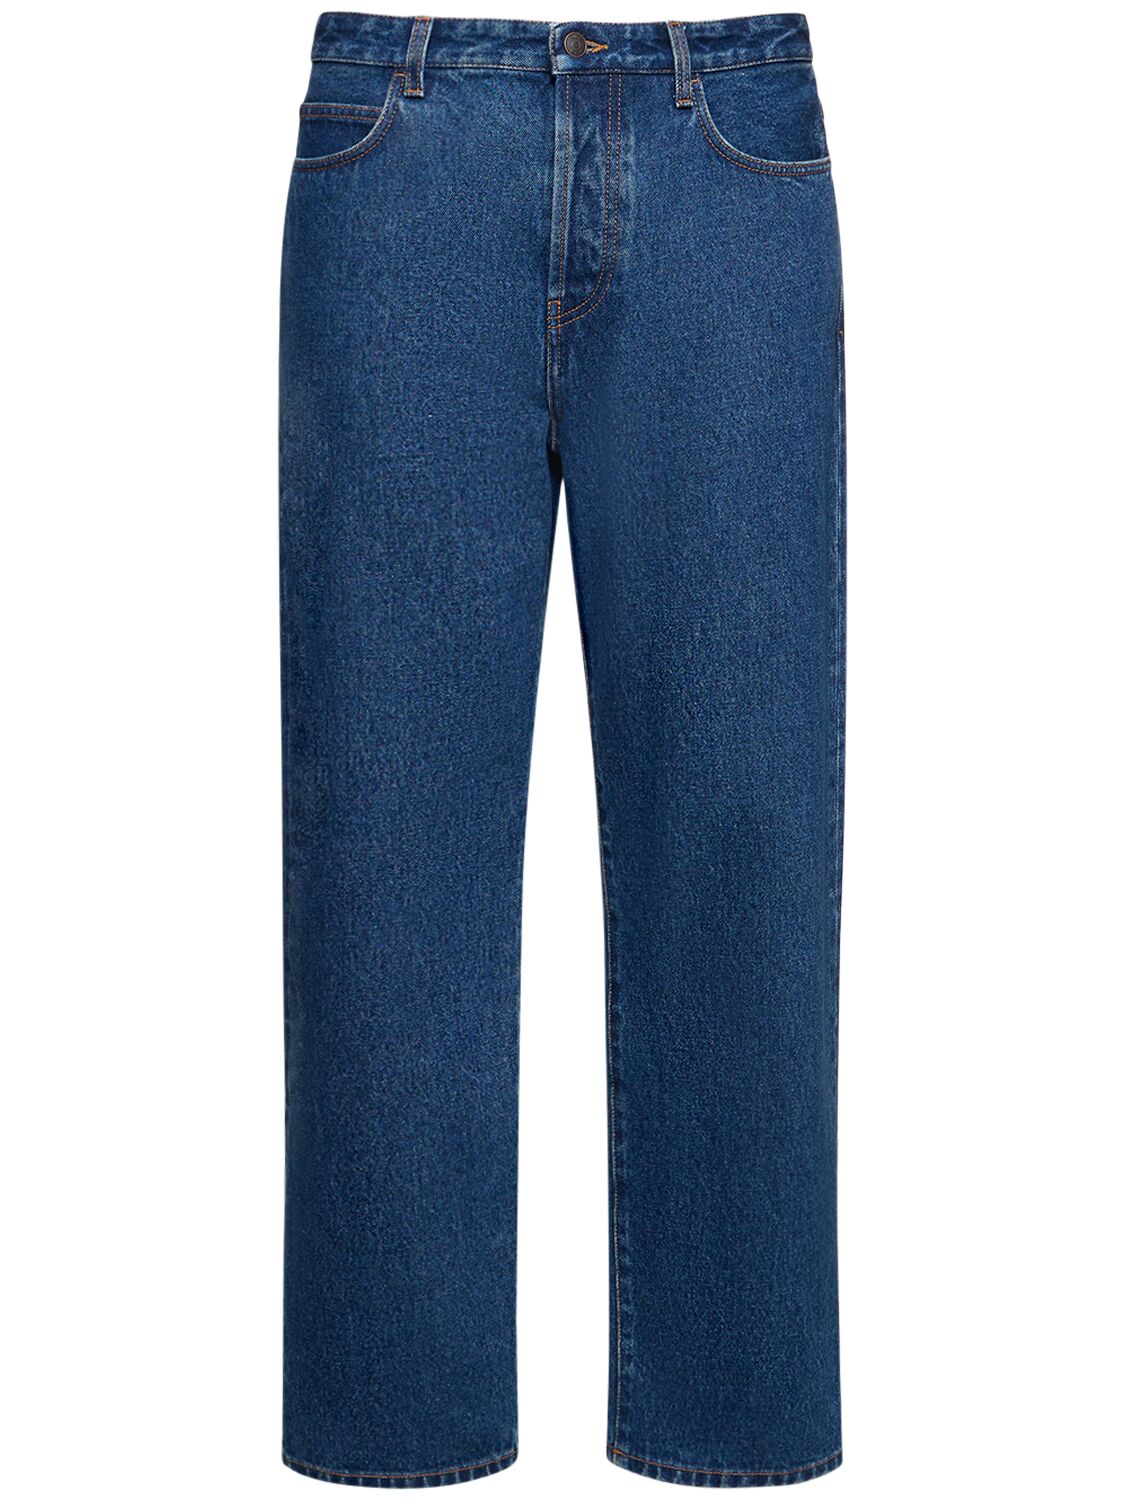 Morton Cotton Denim Jeans – MEN > CLOTHING > JEANS